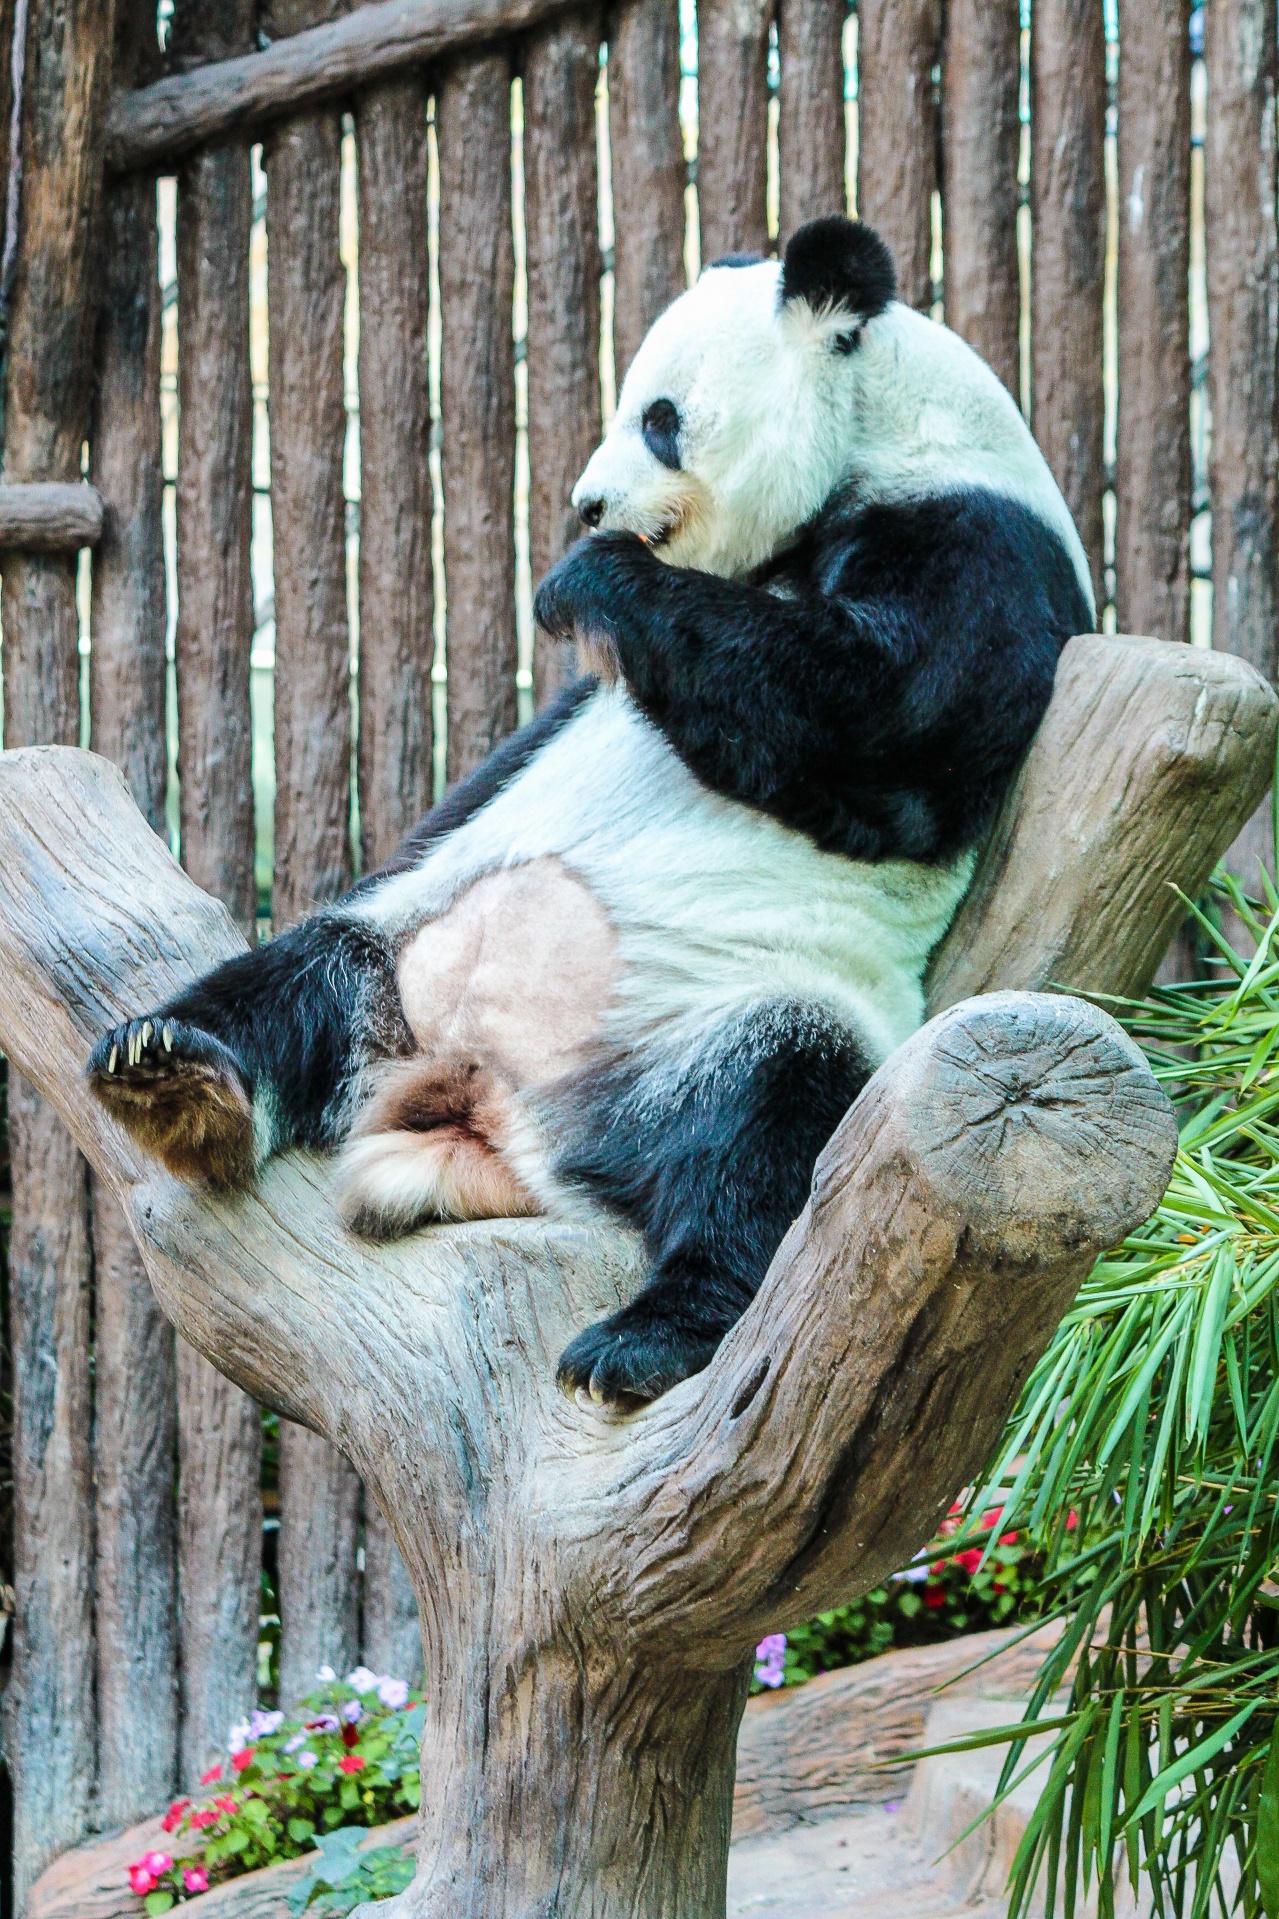 Panda in ChiangMai Zoo, Thailand